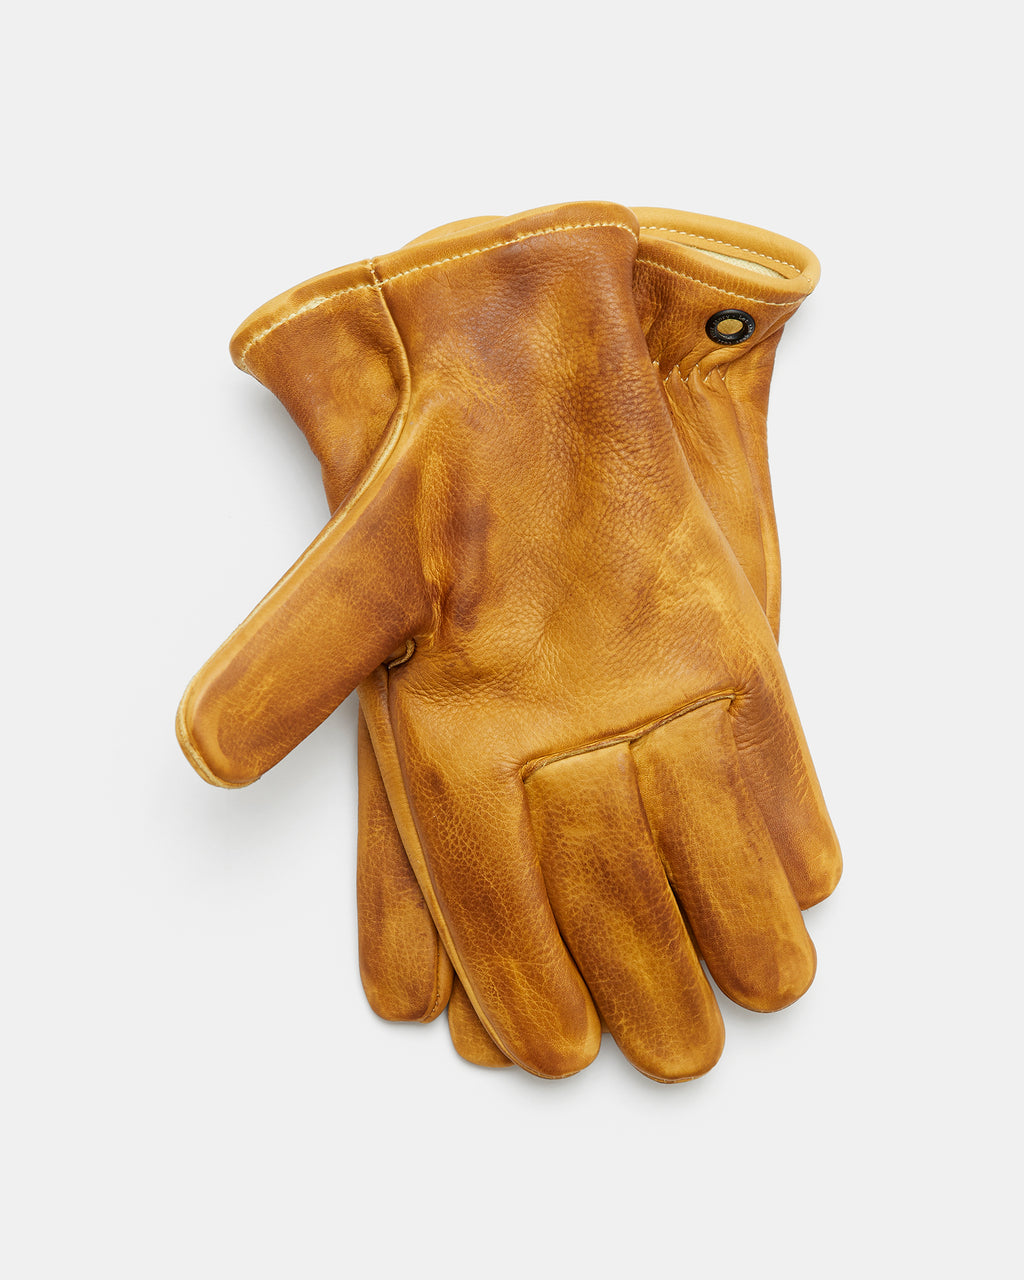 Kevlar Lined Dickson Gloves